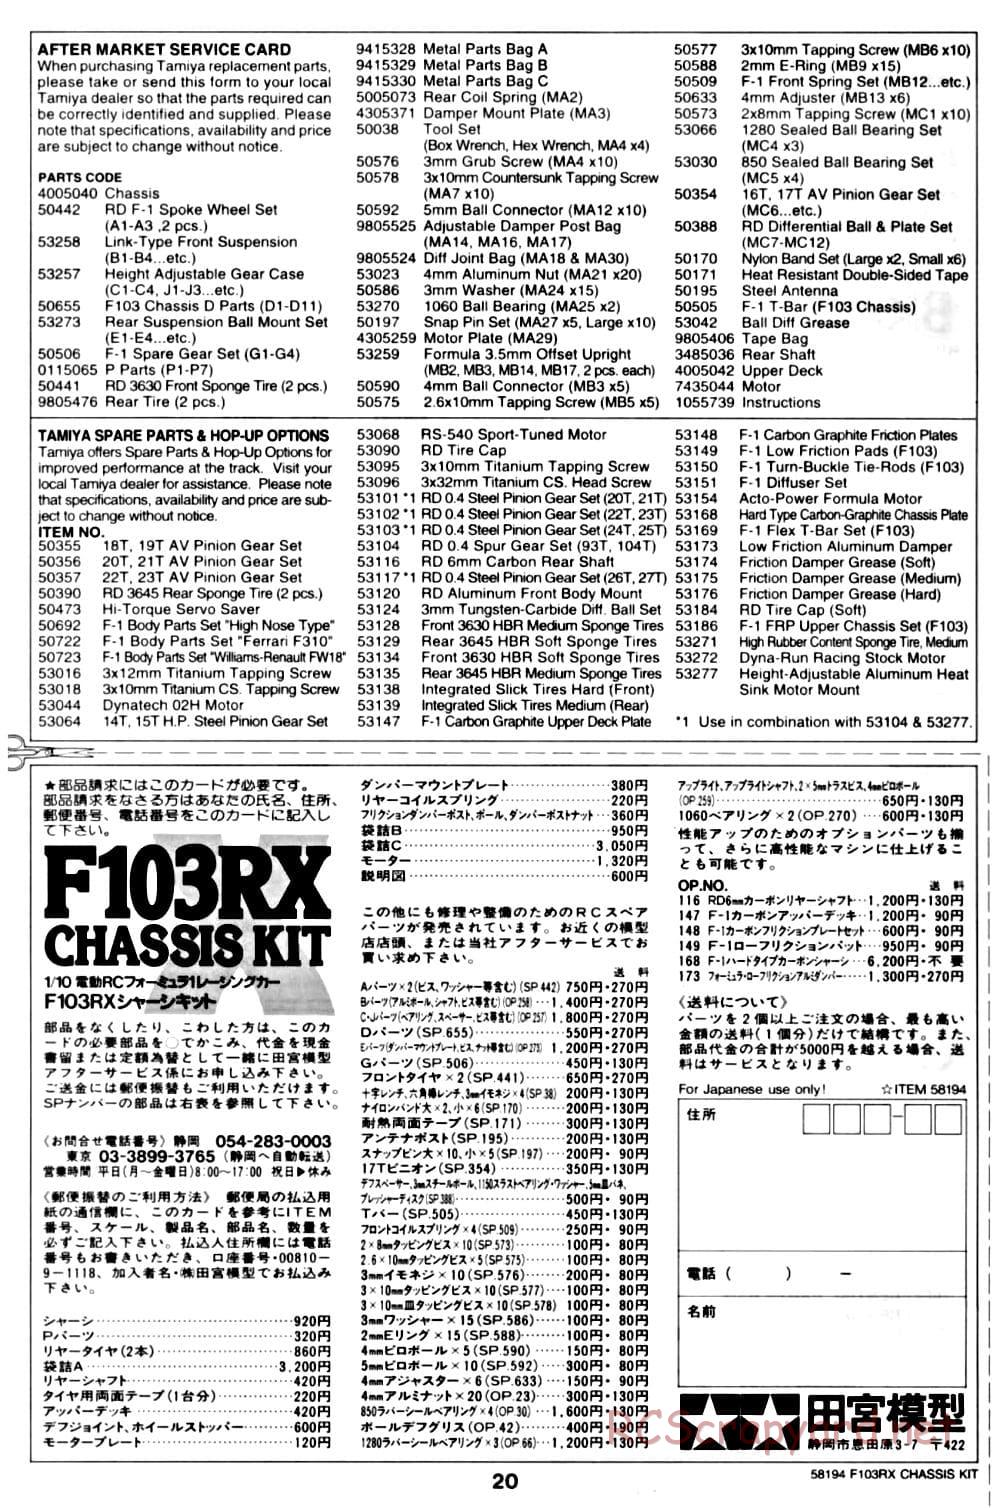 Tamiya - F103RX Chassis - Manual - Page 20